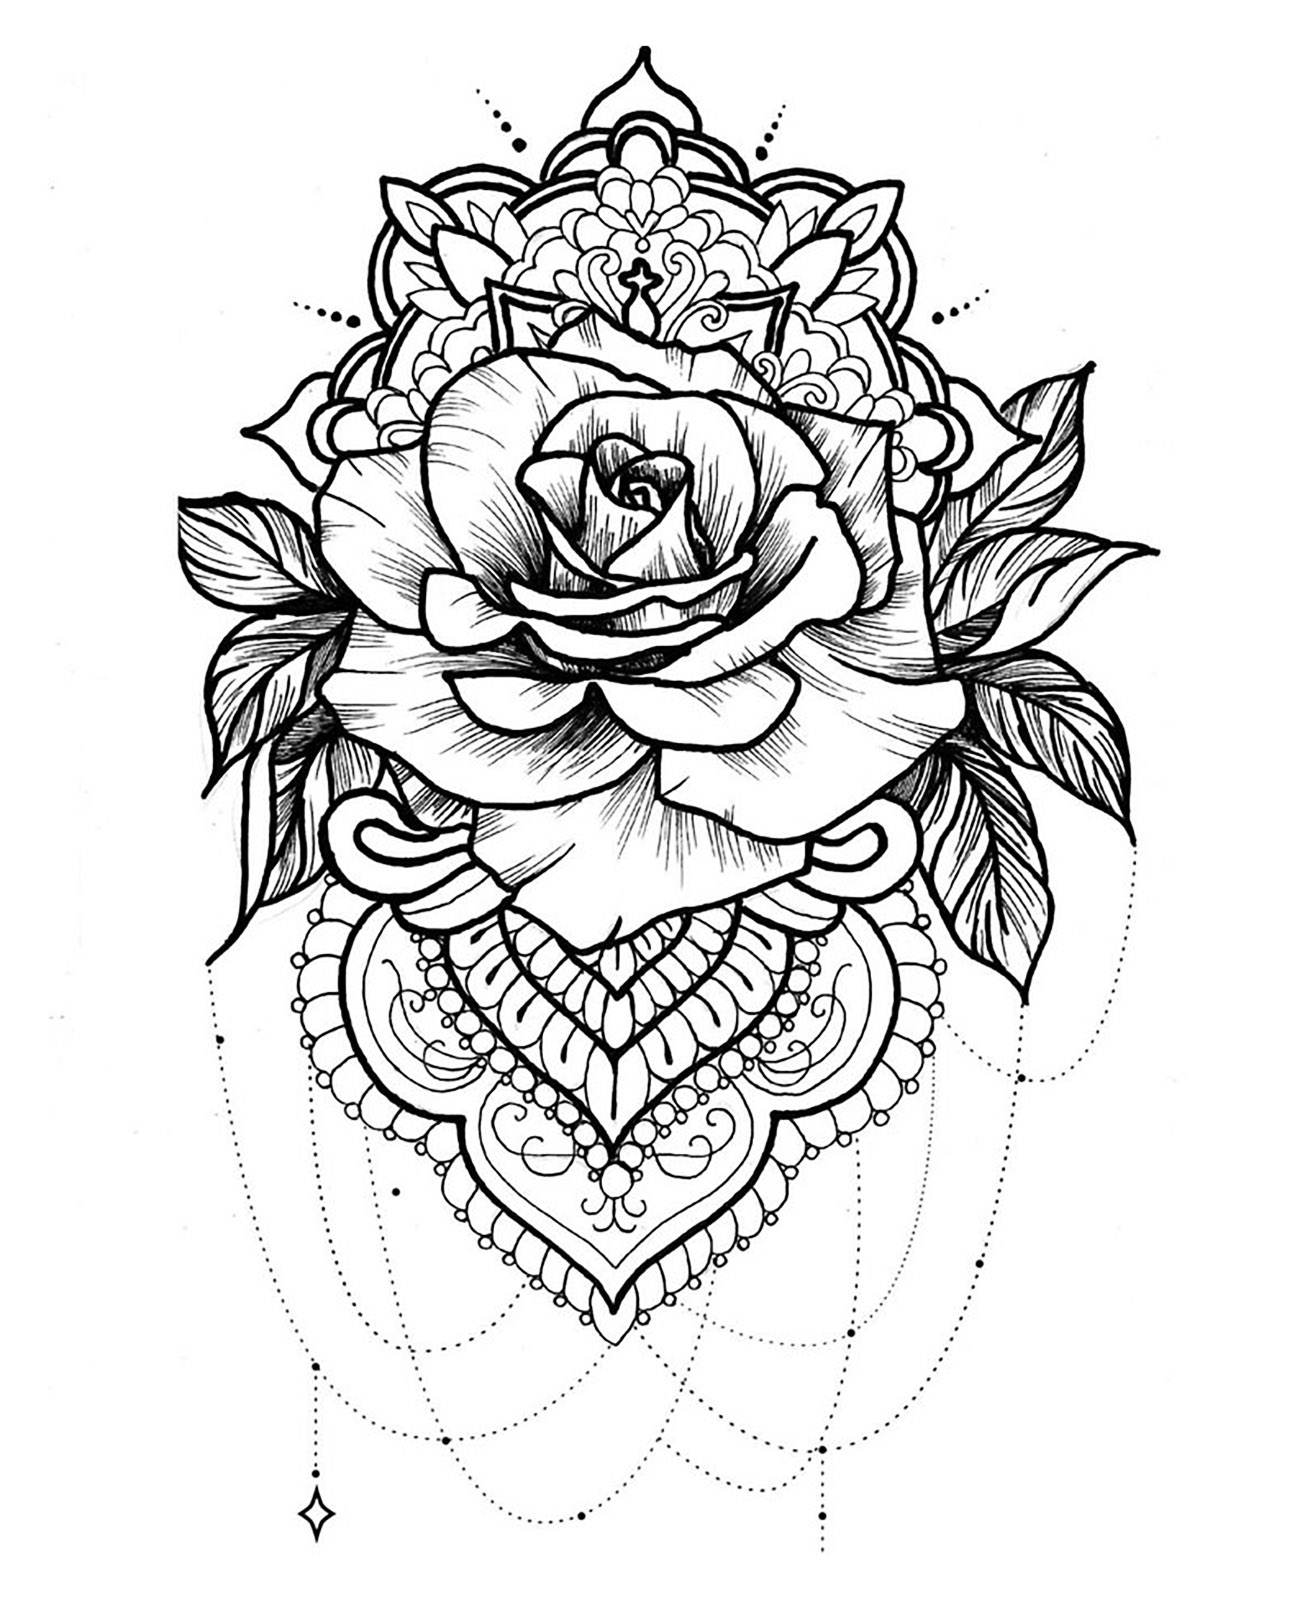 Eine hübsche Rose, die mit einem Mandala verwechselt wurde - ein wunderschönes Tattoo!